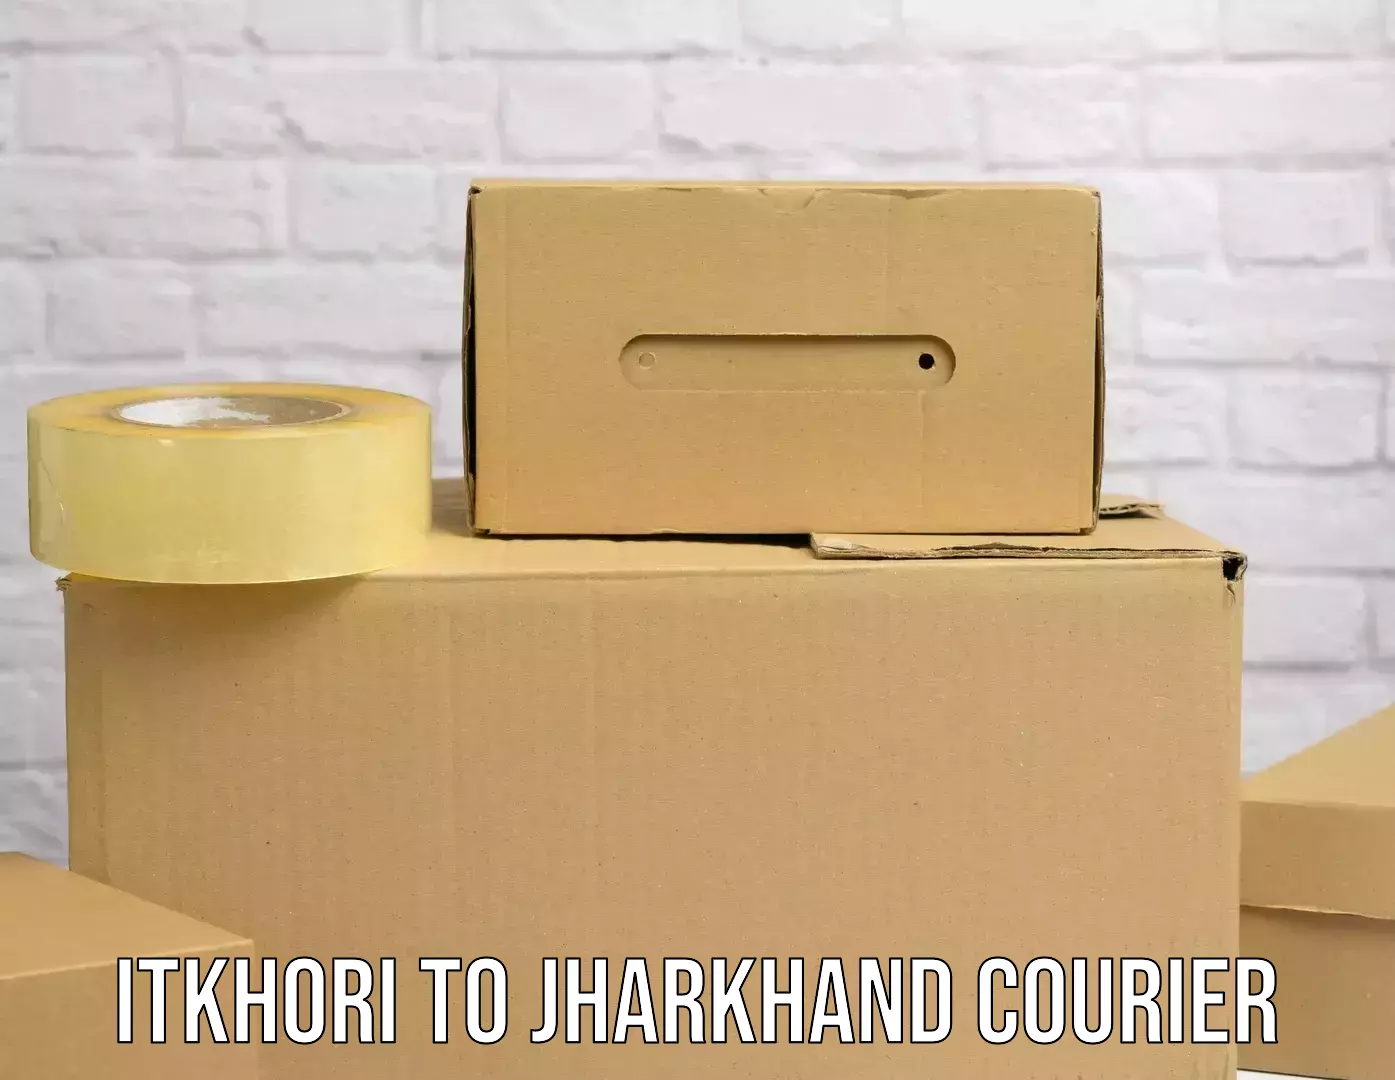 Special handling courier Itkhori to Deoghar